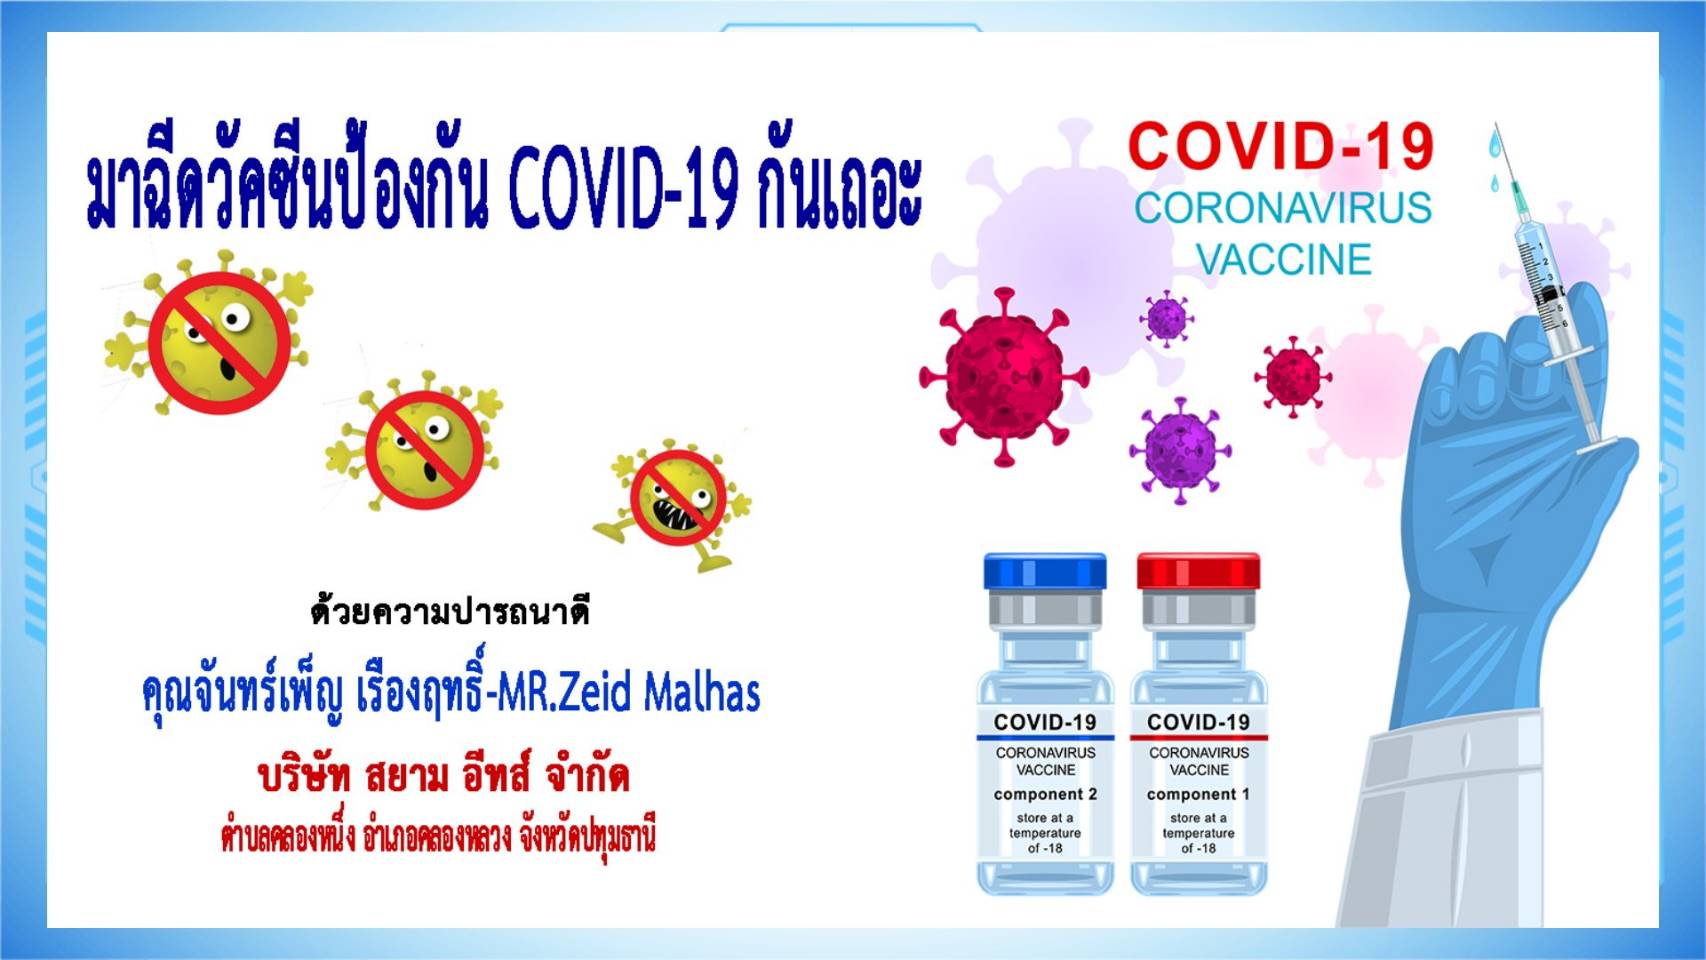 ปทุมธานี-บริษัท สยาม อีทส์ จำกัด เชิญชวนฉีดวัคซีนป้องกันโควิด-19